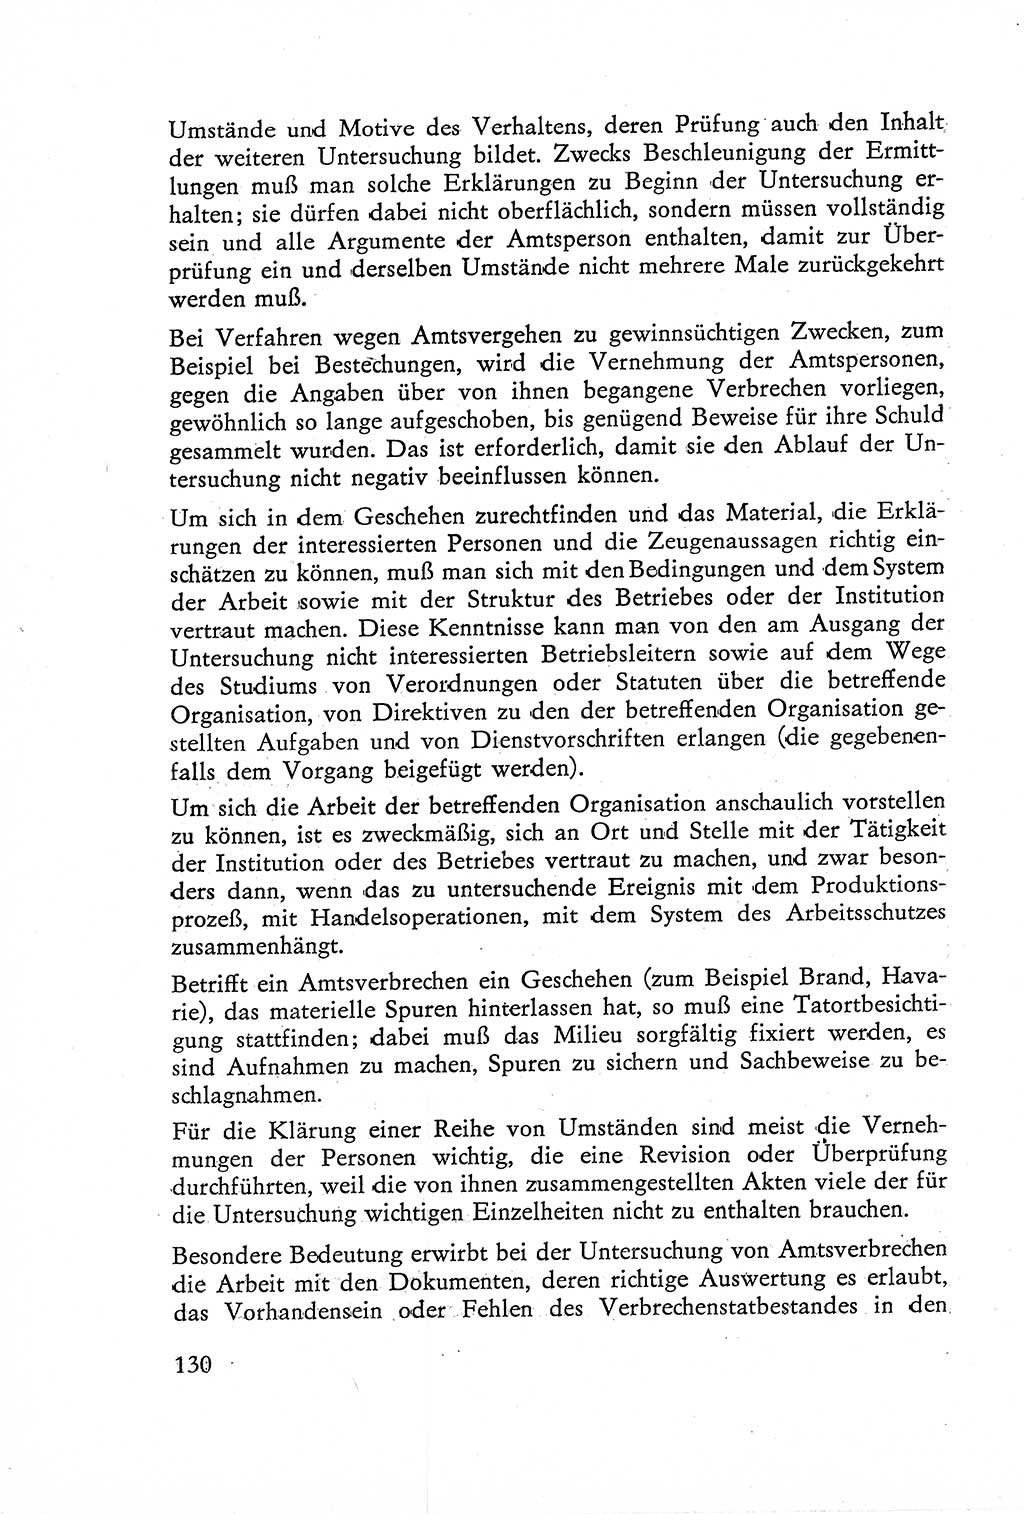 Die Untersuchung einzelner Verbrechensarten [Deutsche Demokratische Republik (DDR)] 1960, Seite 130 (Unters. Verbr.-Art. DDR 1960, S. 130)